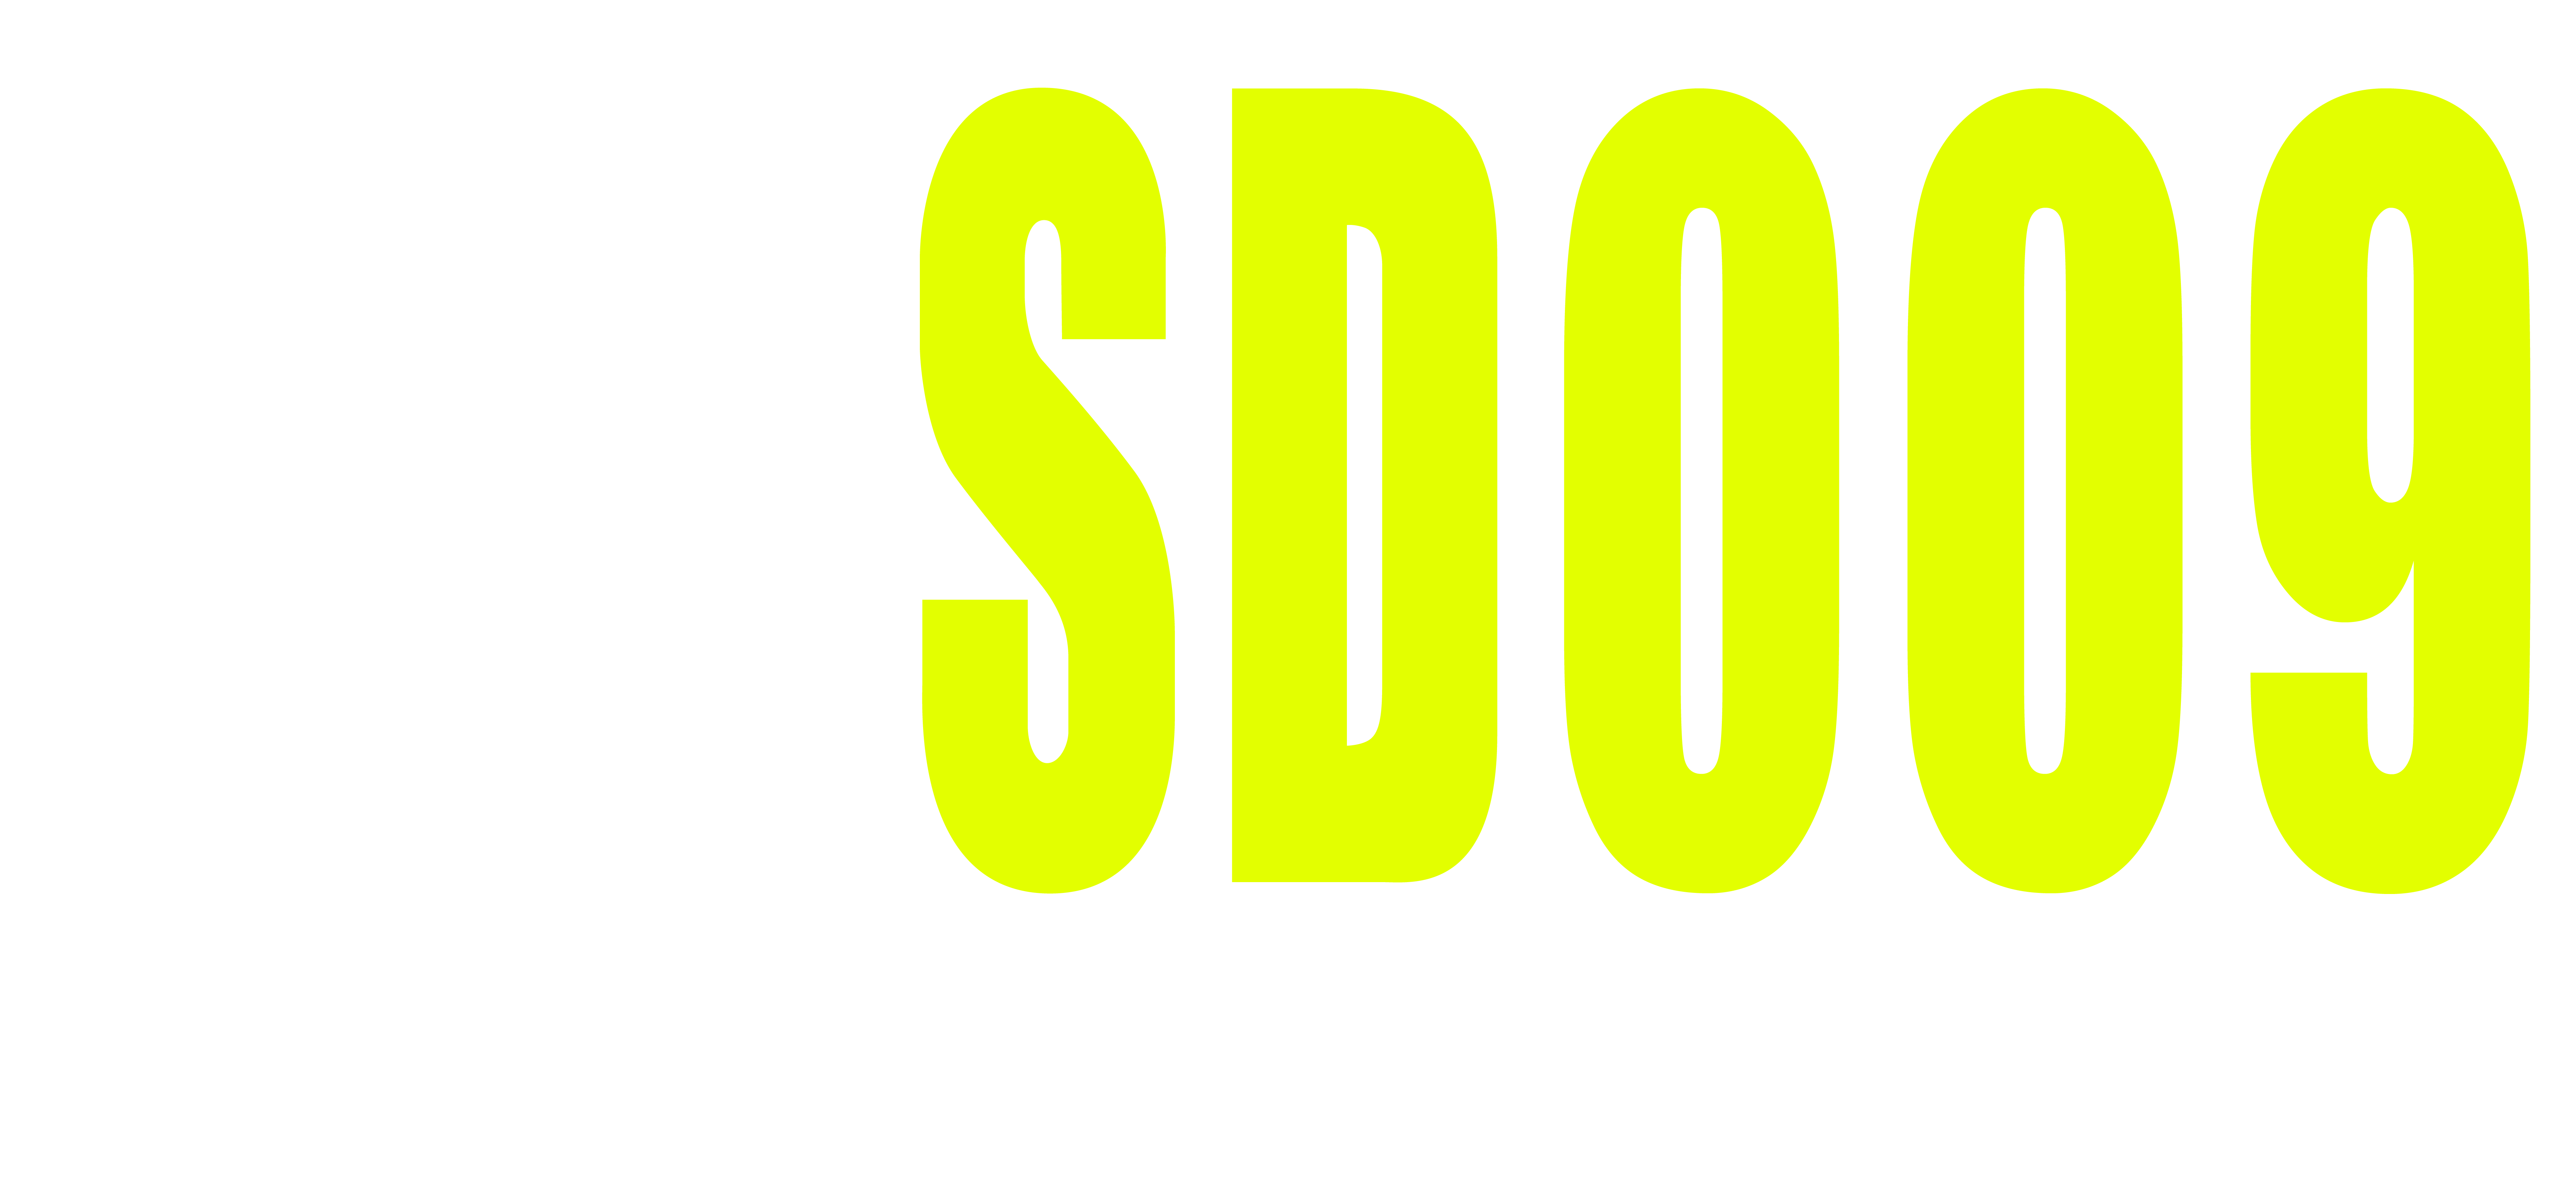 LXSD009